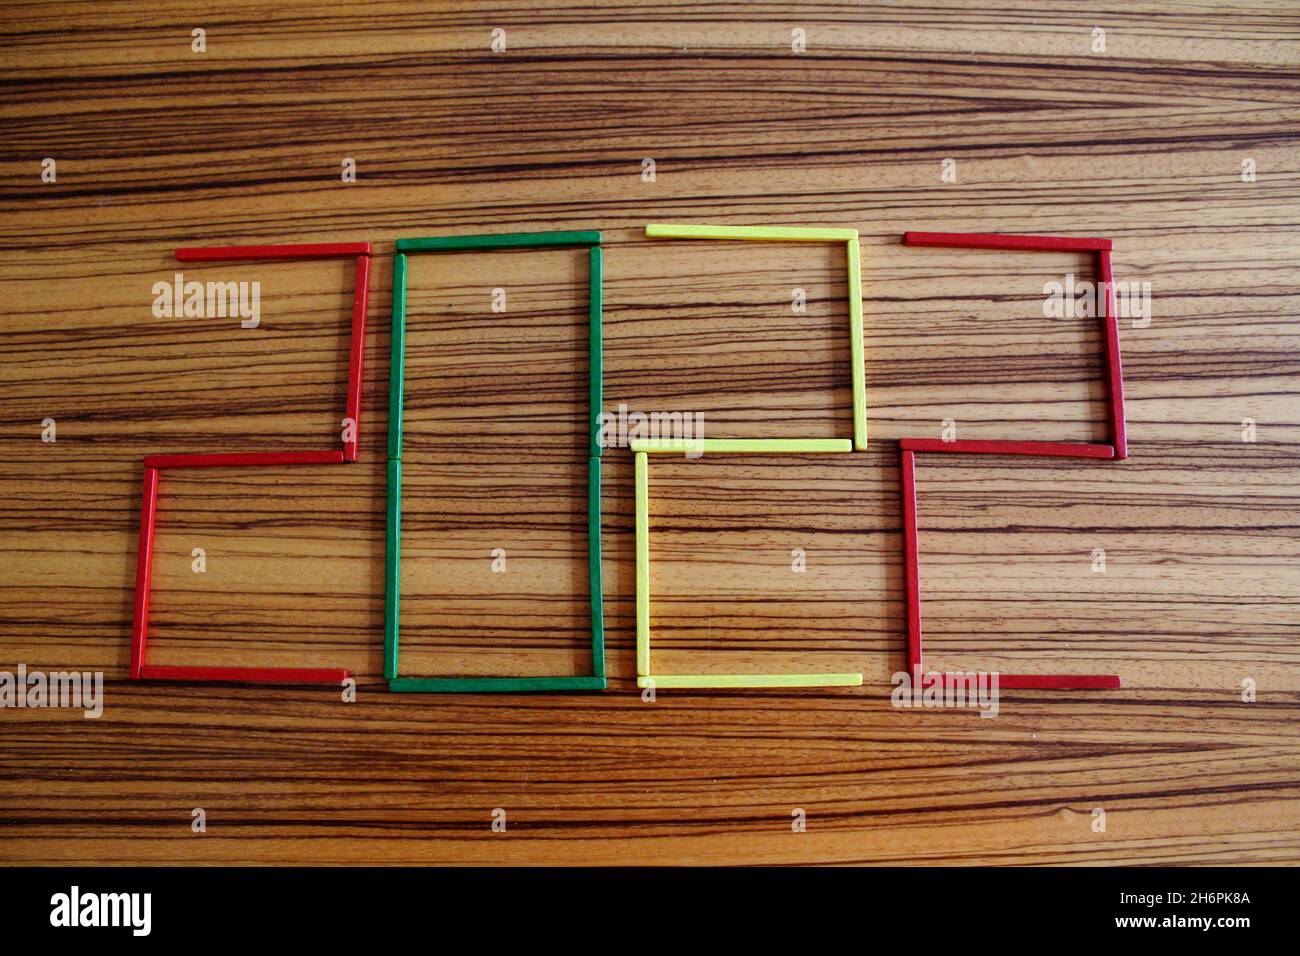 Bunte Holzstäbchen in rot, grün und gelb, auf einem Holztisch liegen, die die Zahl 2022 darstellen. Stockfoto